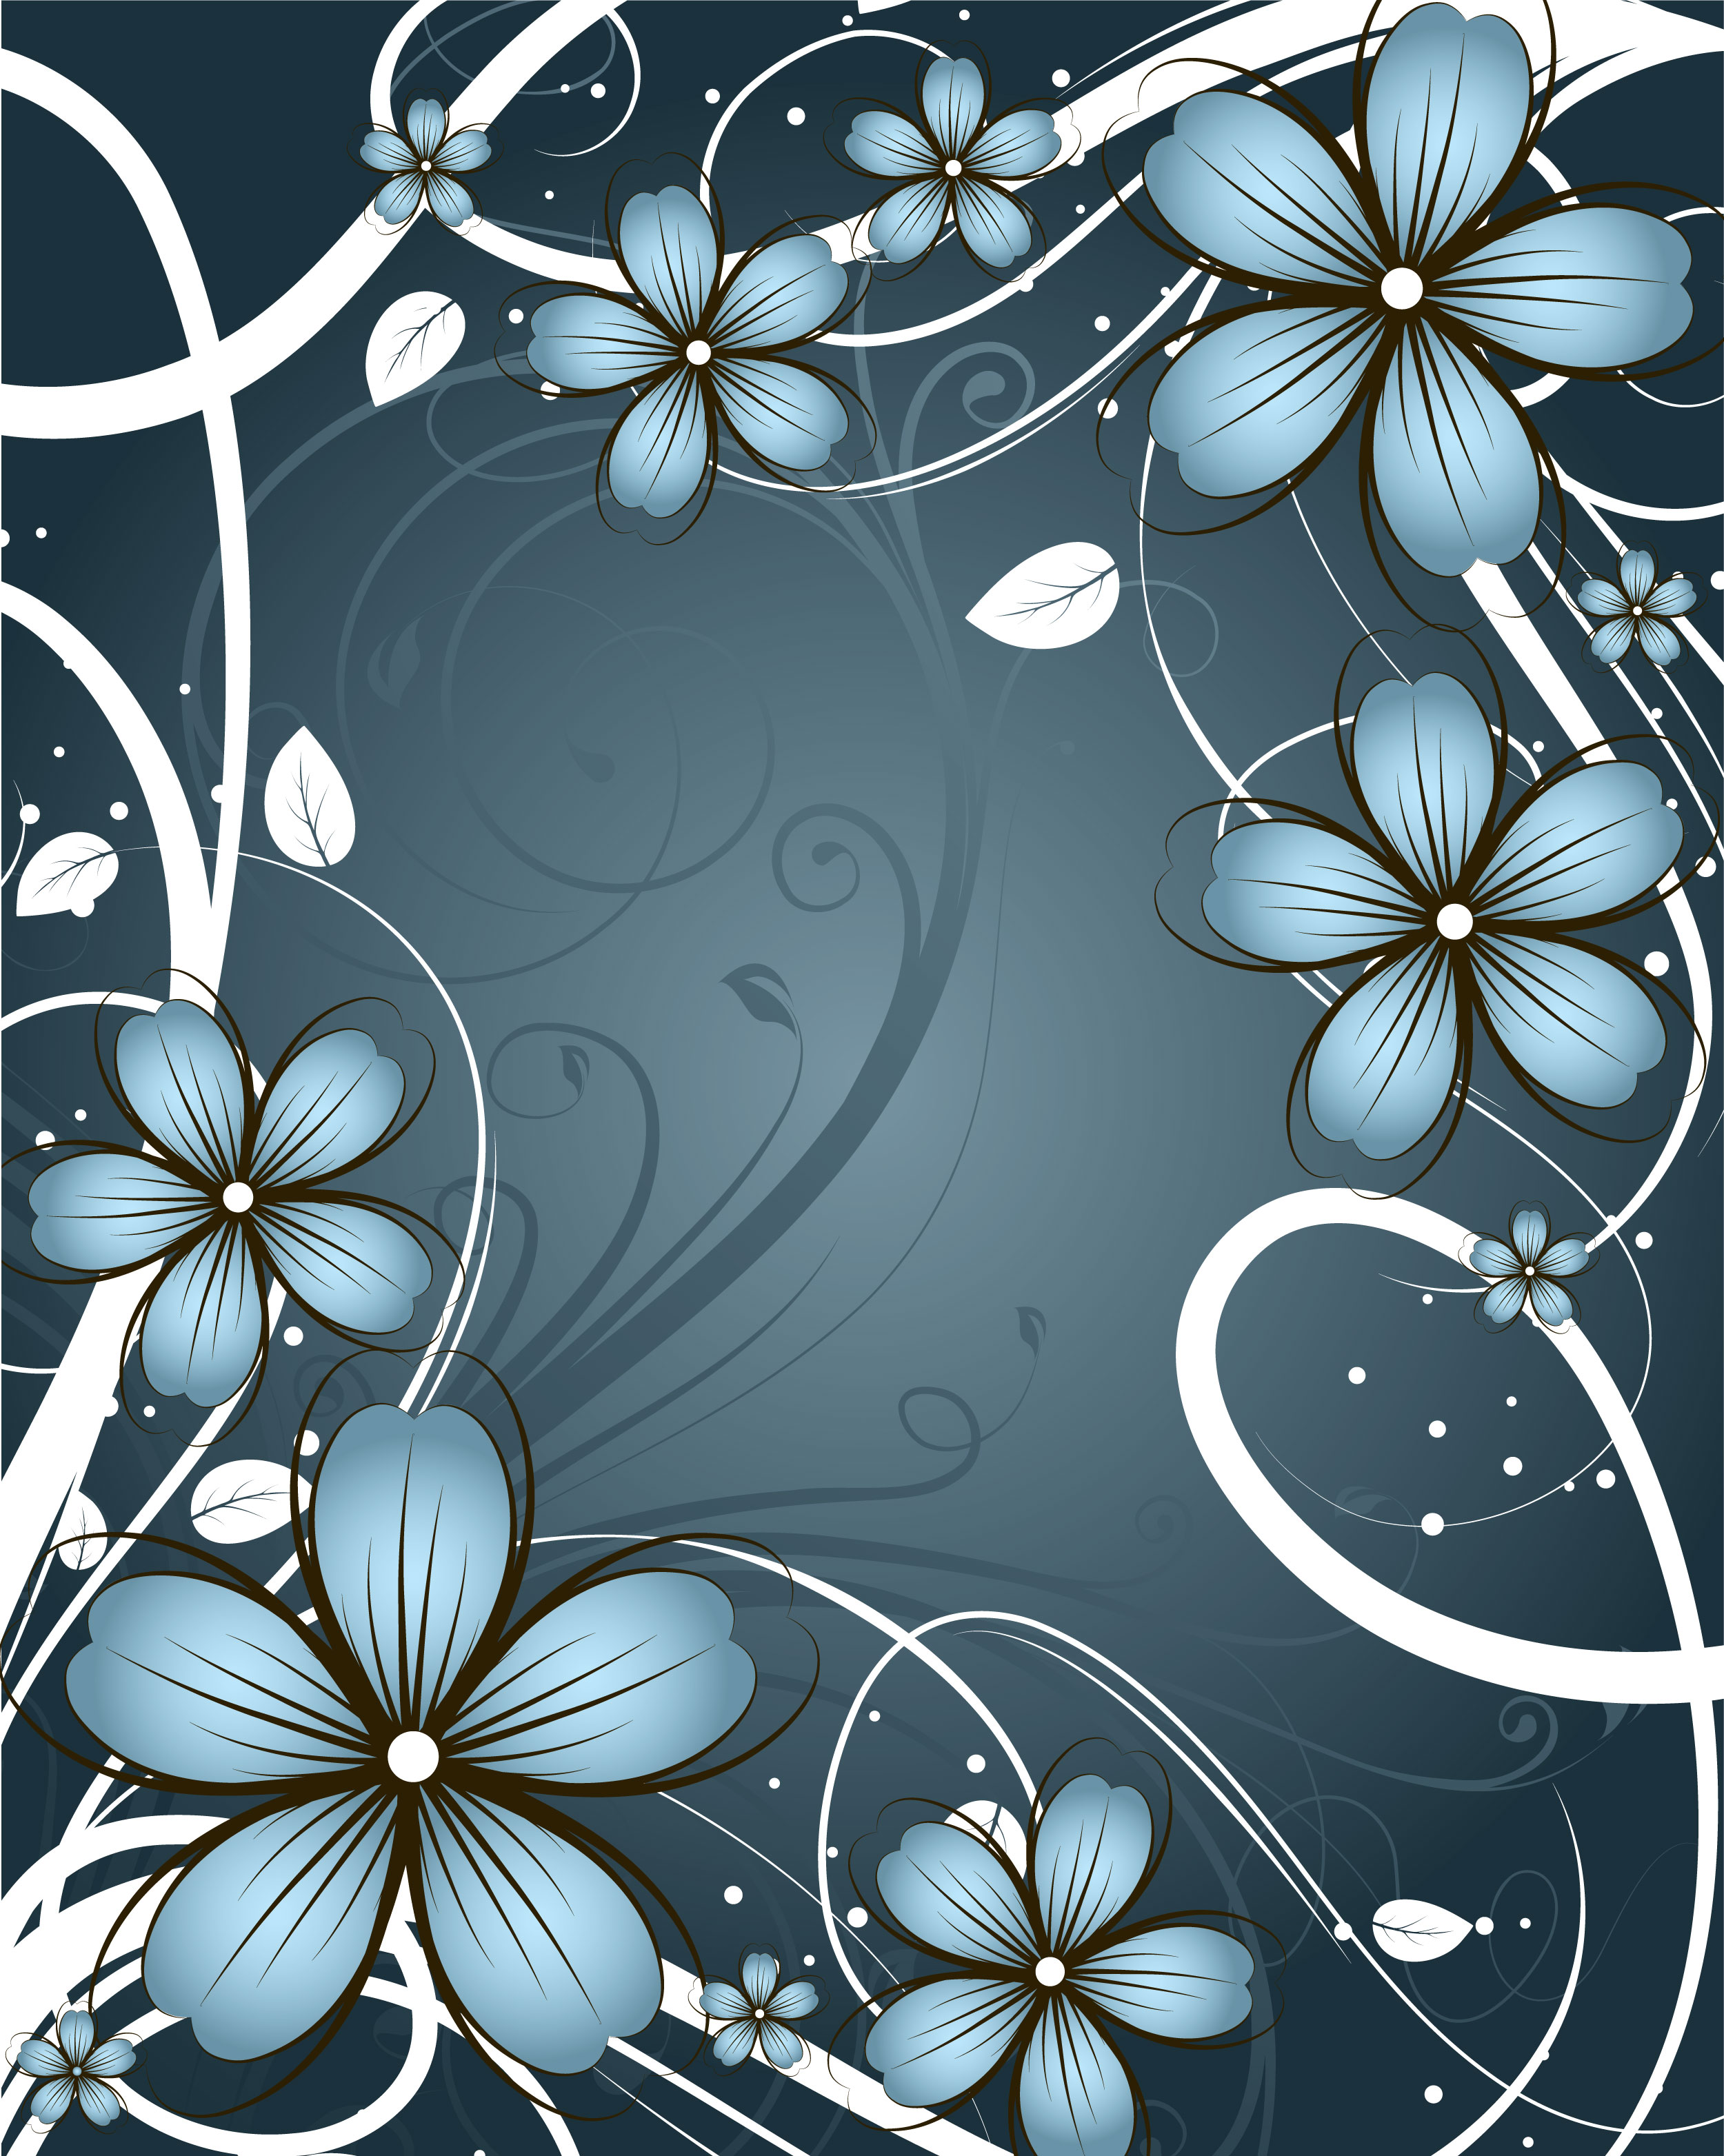 青い花のイラスト フリー素材 背景 壁紙no 358 青 白ライン 葉